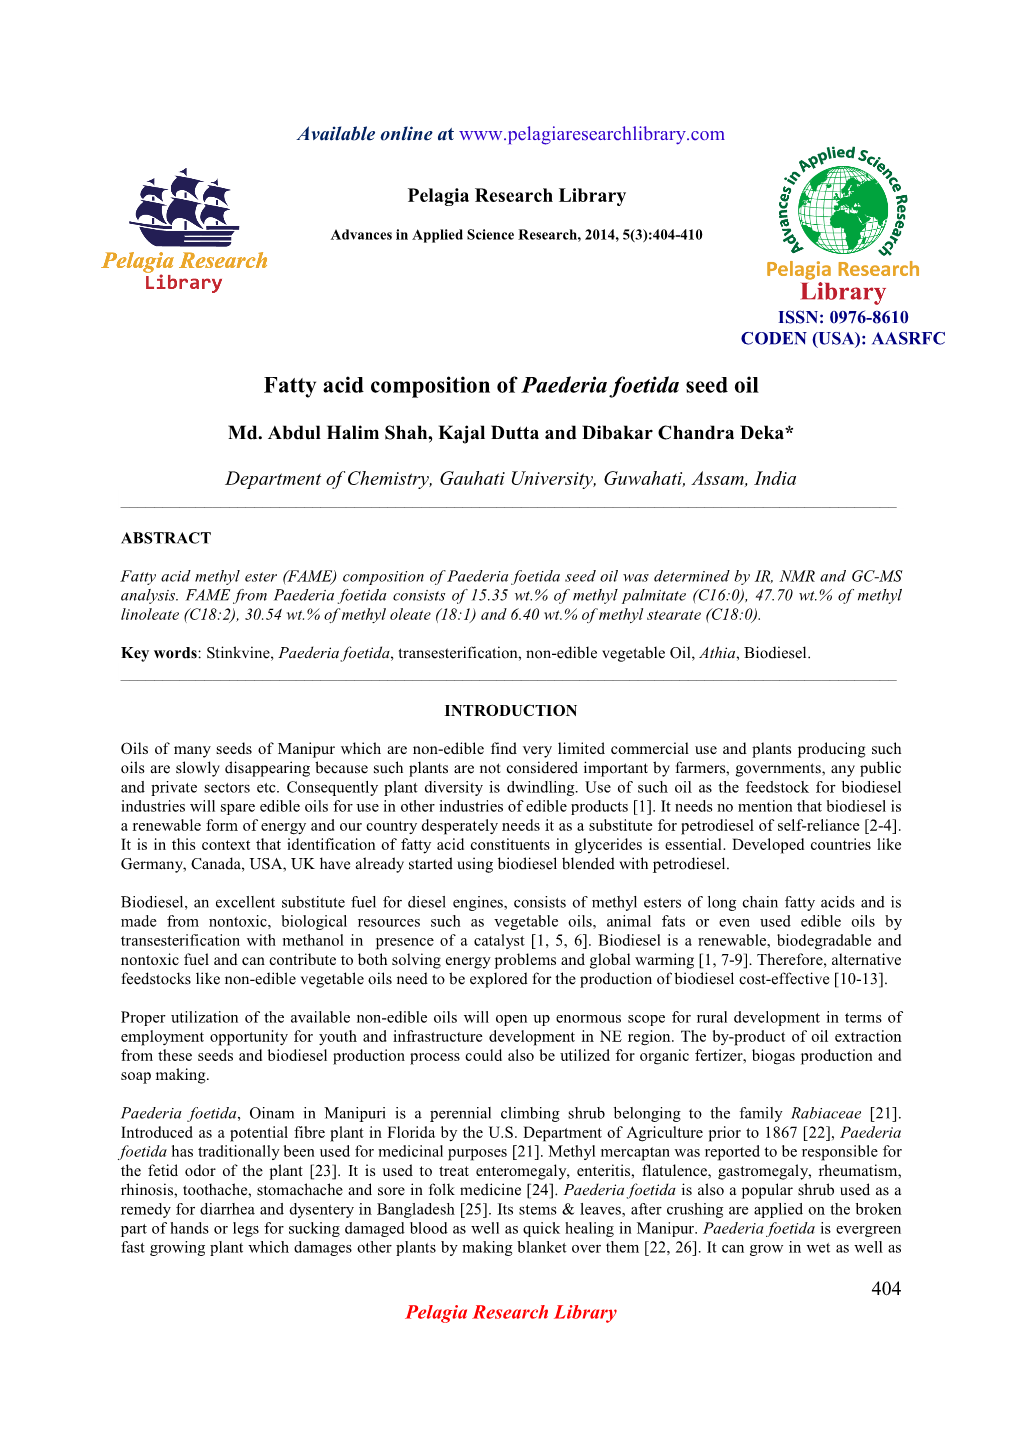 Fatty Acid Composition of Paederia Foetida Seed Oil